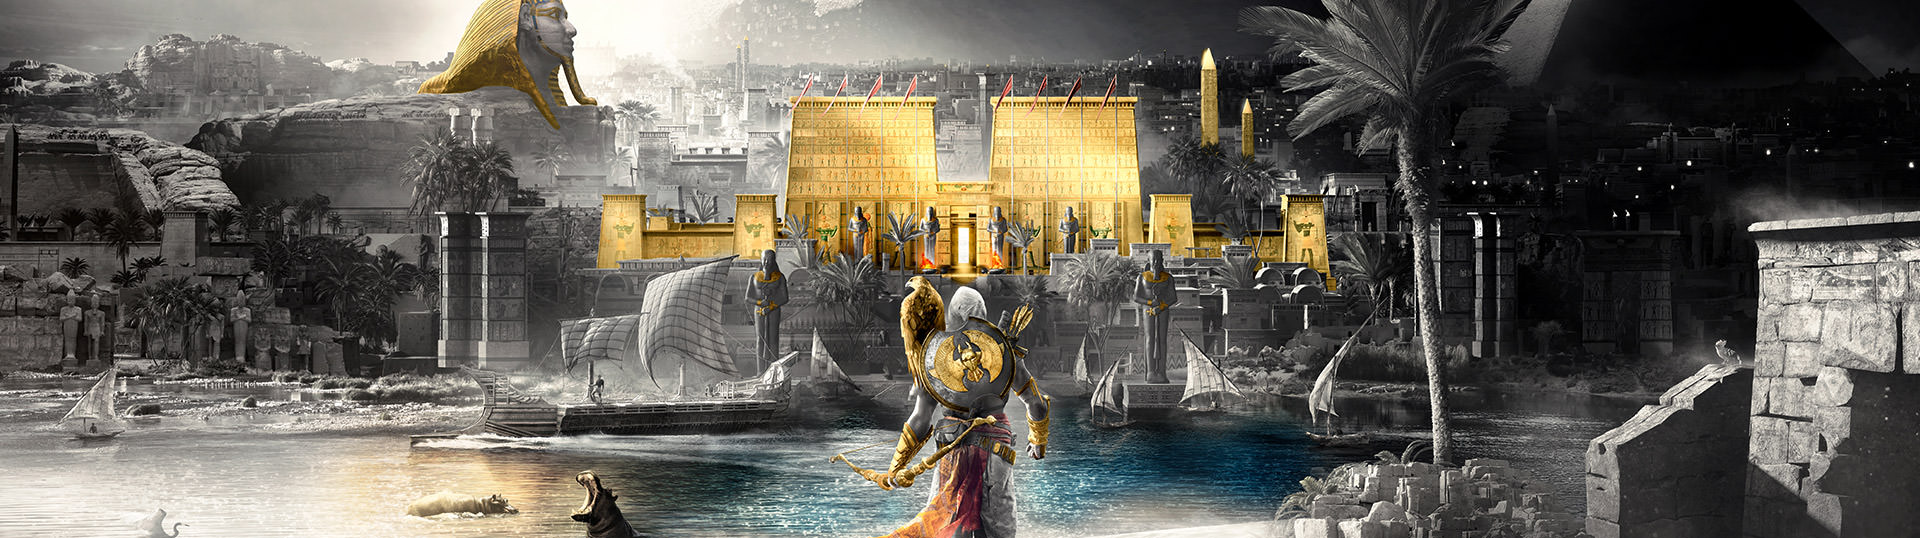 Assassin origin gold. Assassin's Creed Origins Gold Edition купить. Все скины в Assassin's Creed Origins - Gold Edition.